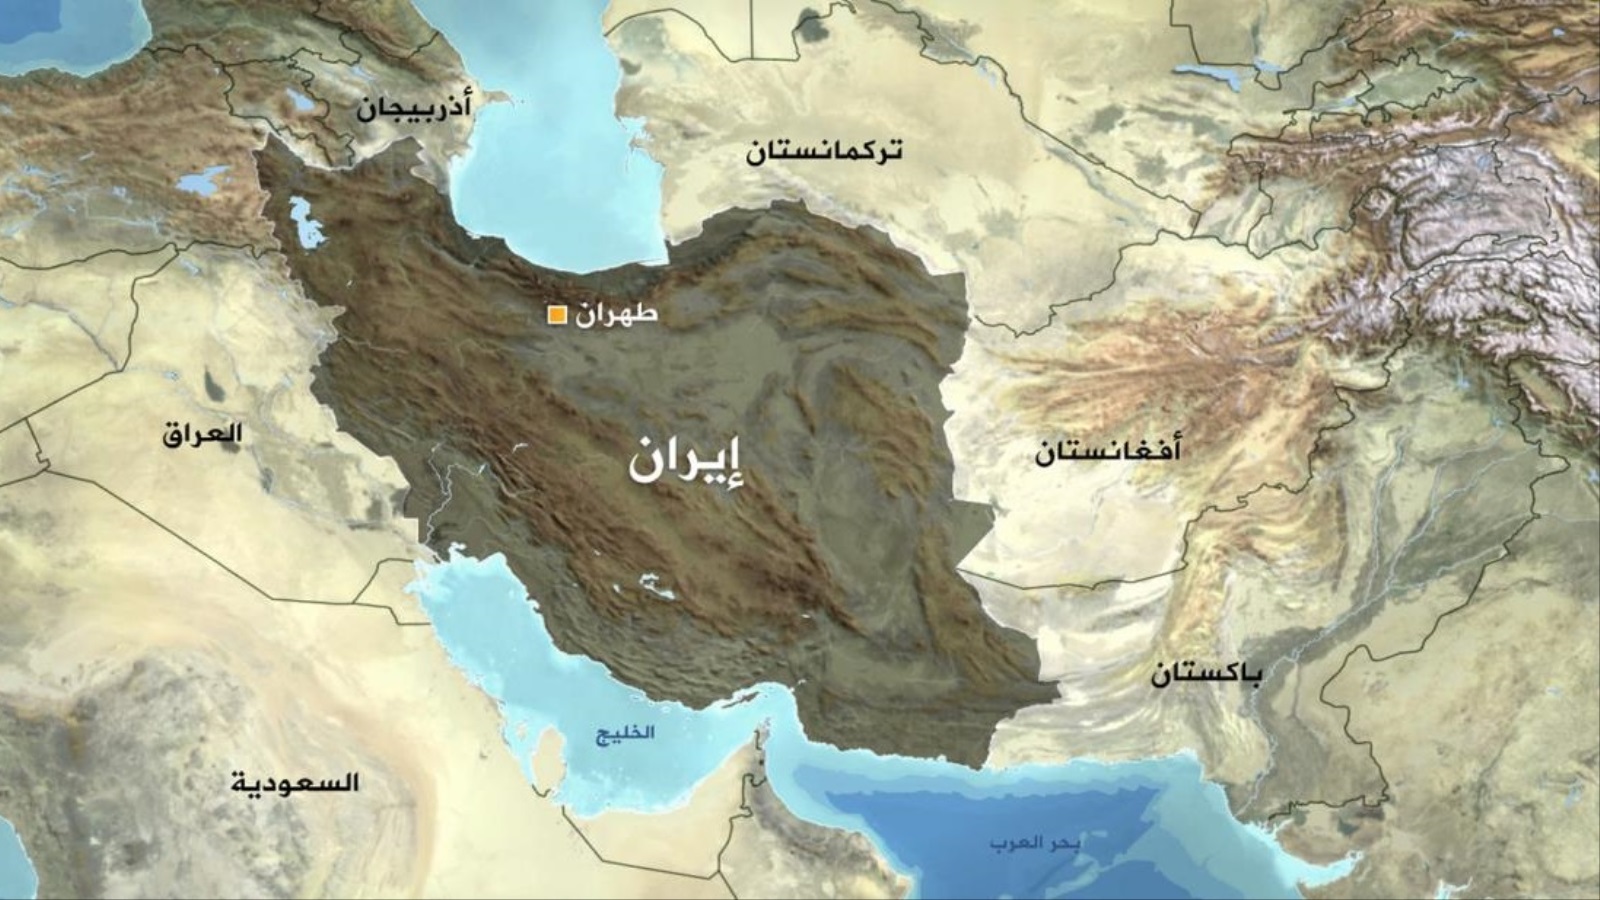 المناطق الإيرانية الشرقية عطشى ولا تريد بناء سدود على حدودها الشرقية وإيران تسعى لتغيير اتفاقية مع أفغانستان لتقسيم المياه بما يتوافق مع مصالحها واحتياجاتها